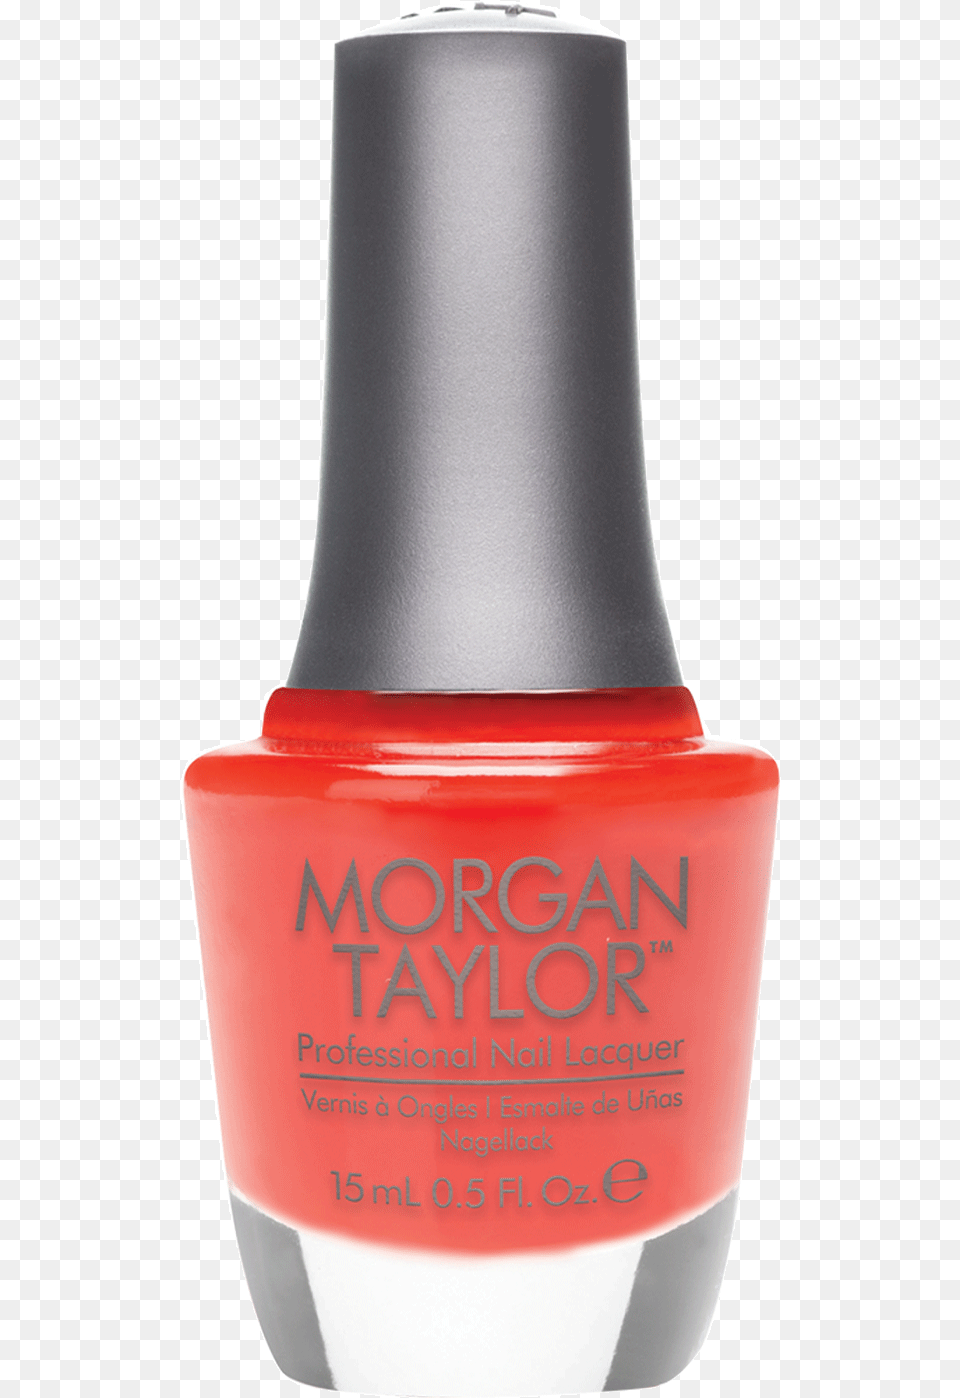 Morgan Taylor Professional Nail Lacquer Morgan Taylor, Cosmetics, Bottle, Shaker, Nail Polish Free Png Download